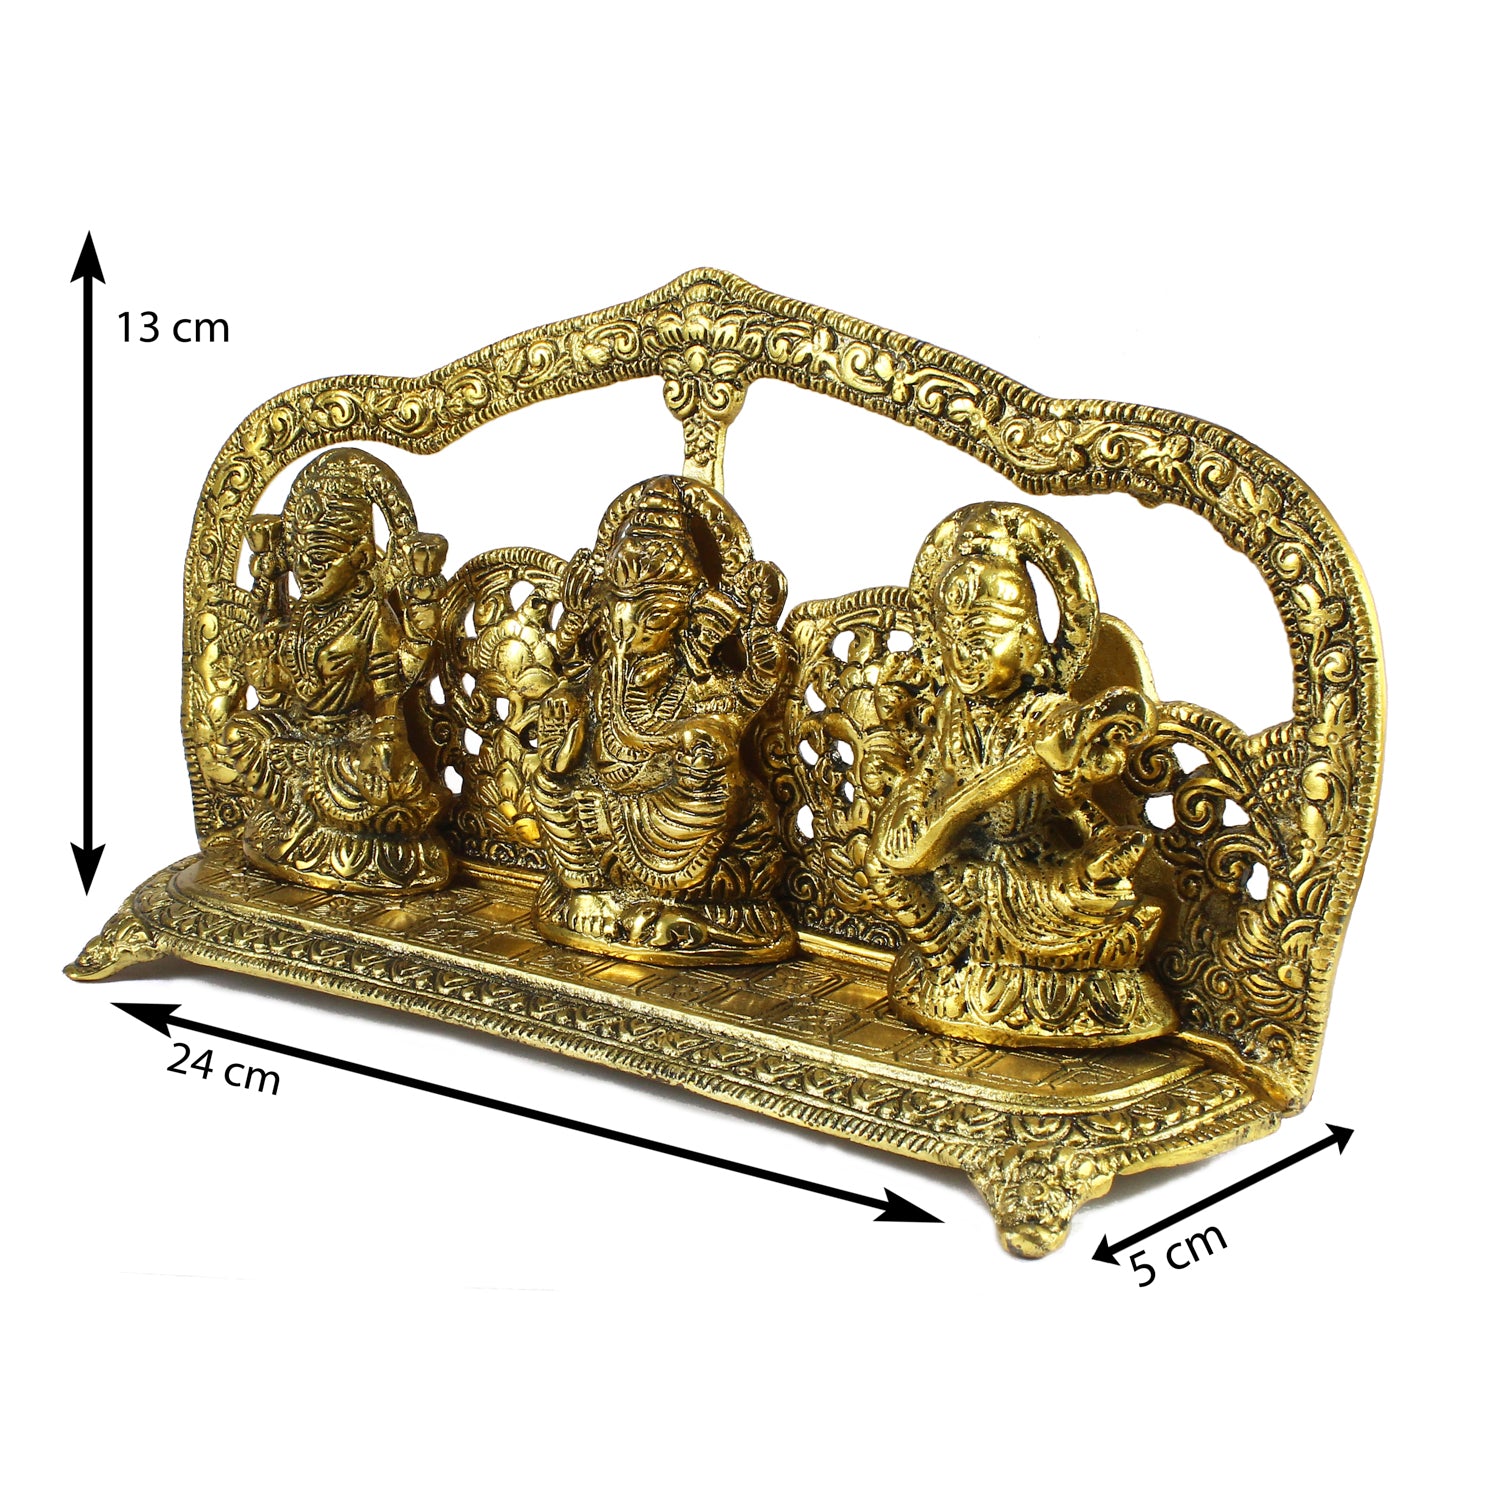 Golden Laxmi Ganesha Saraswati Murtis Religious Idols 2